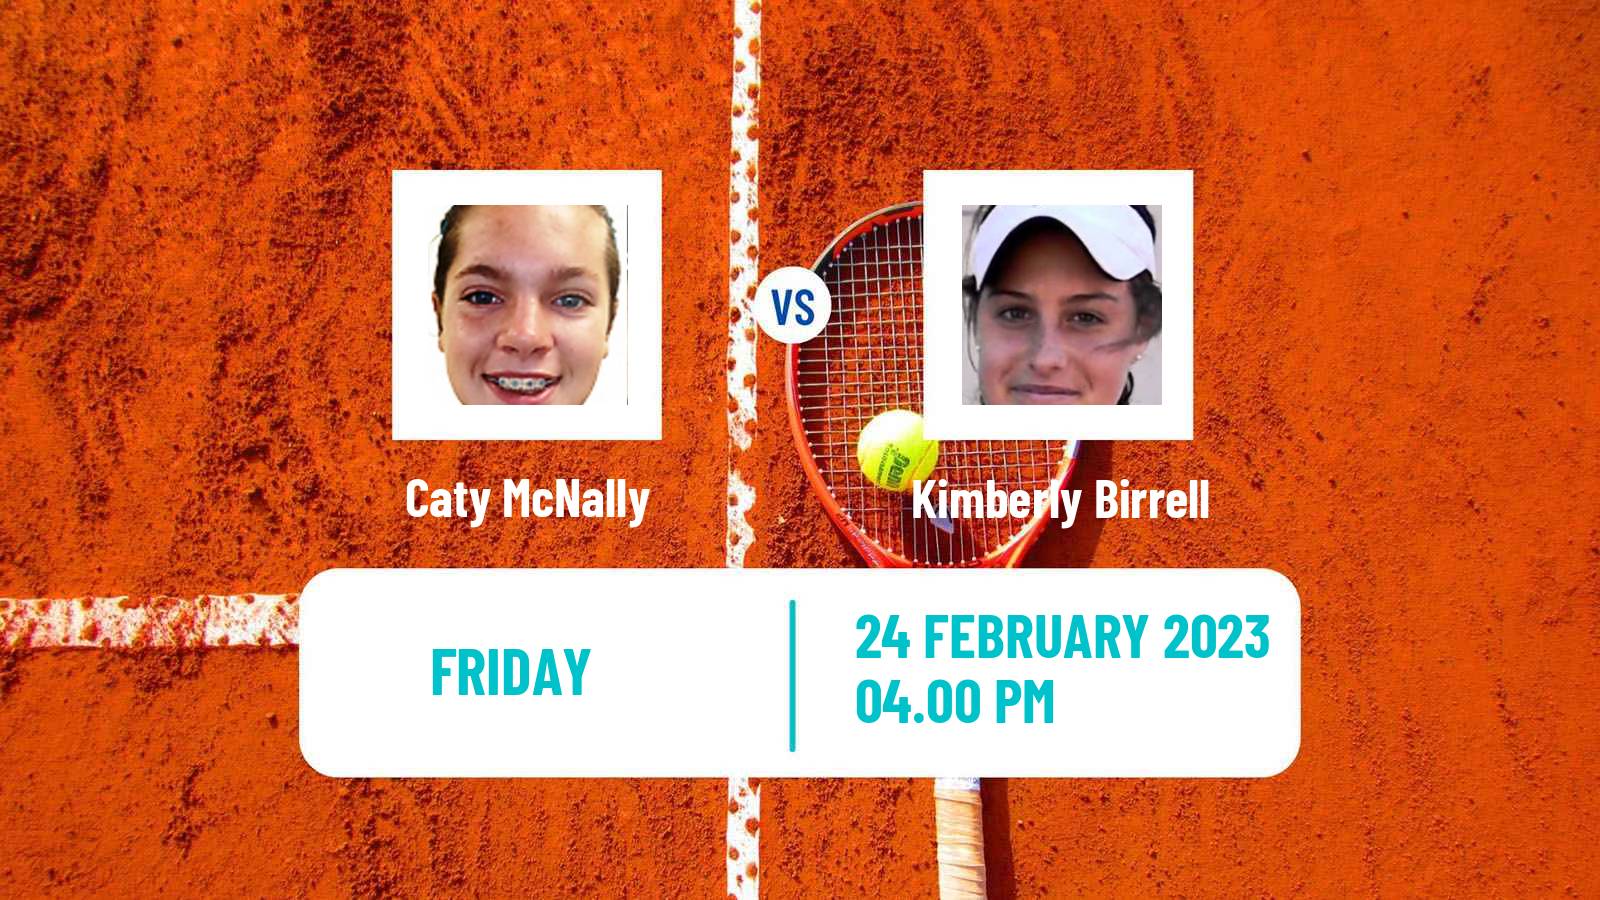 Tennis WTA Merida Caty McNally - Kimberly Birrell